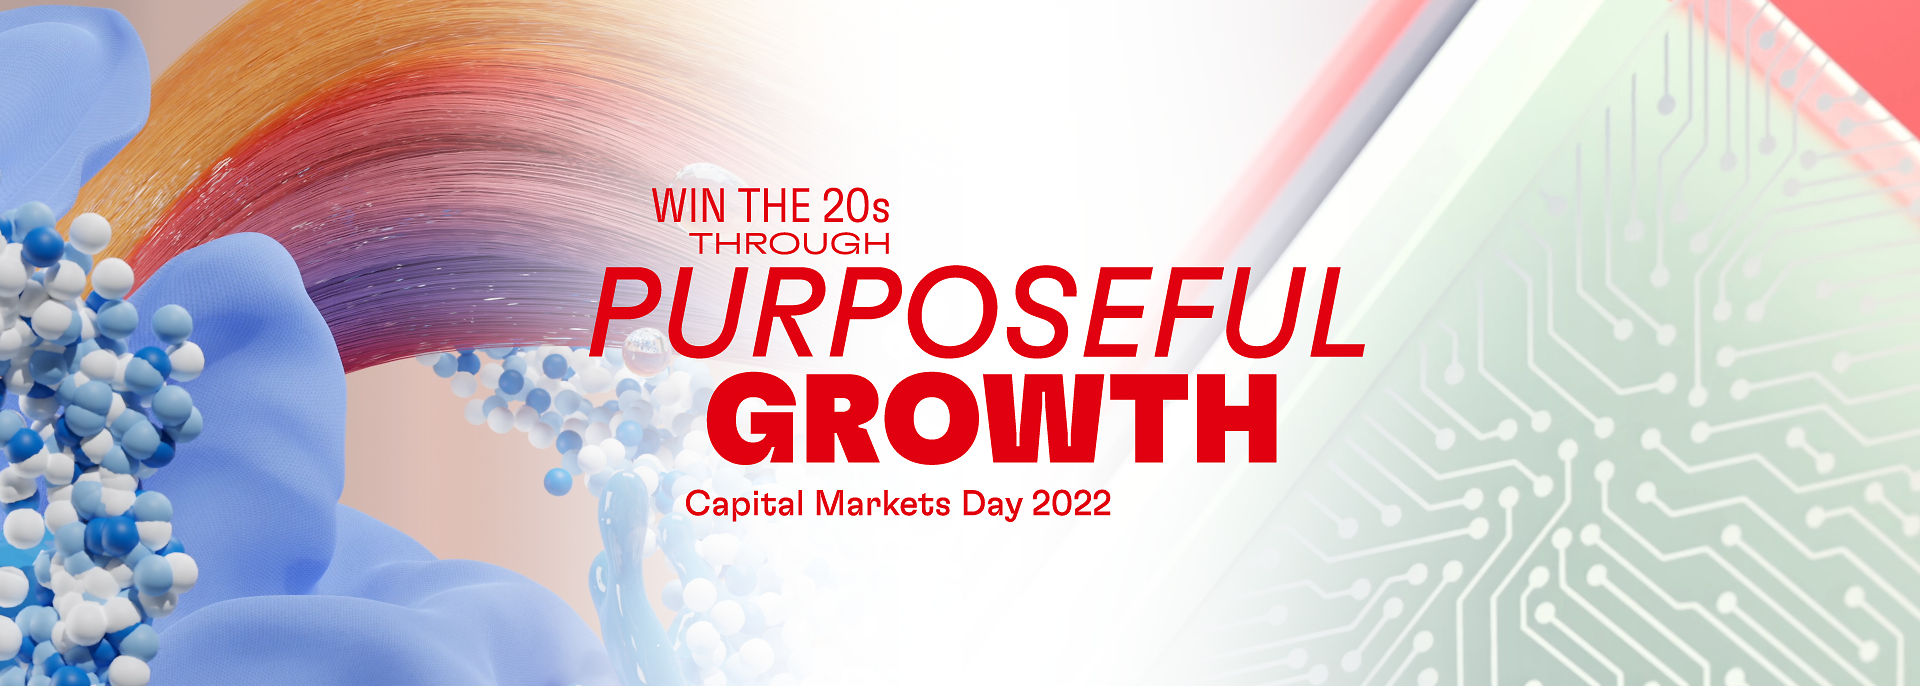 Capital Markets Day 2022